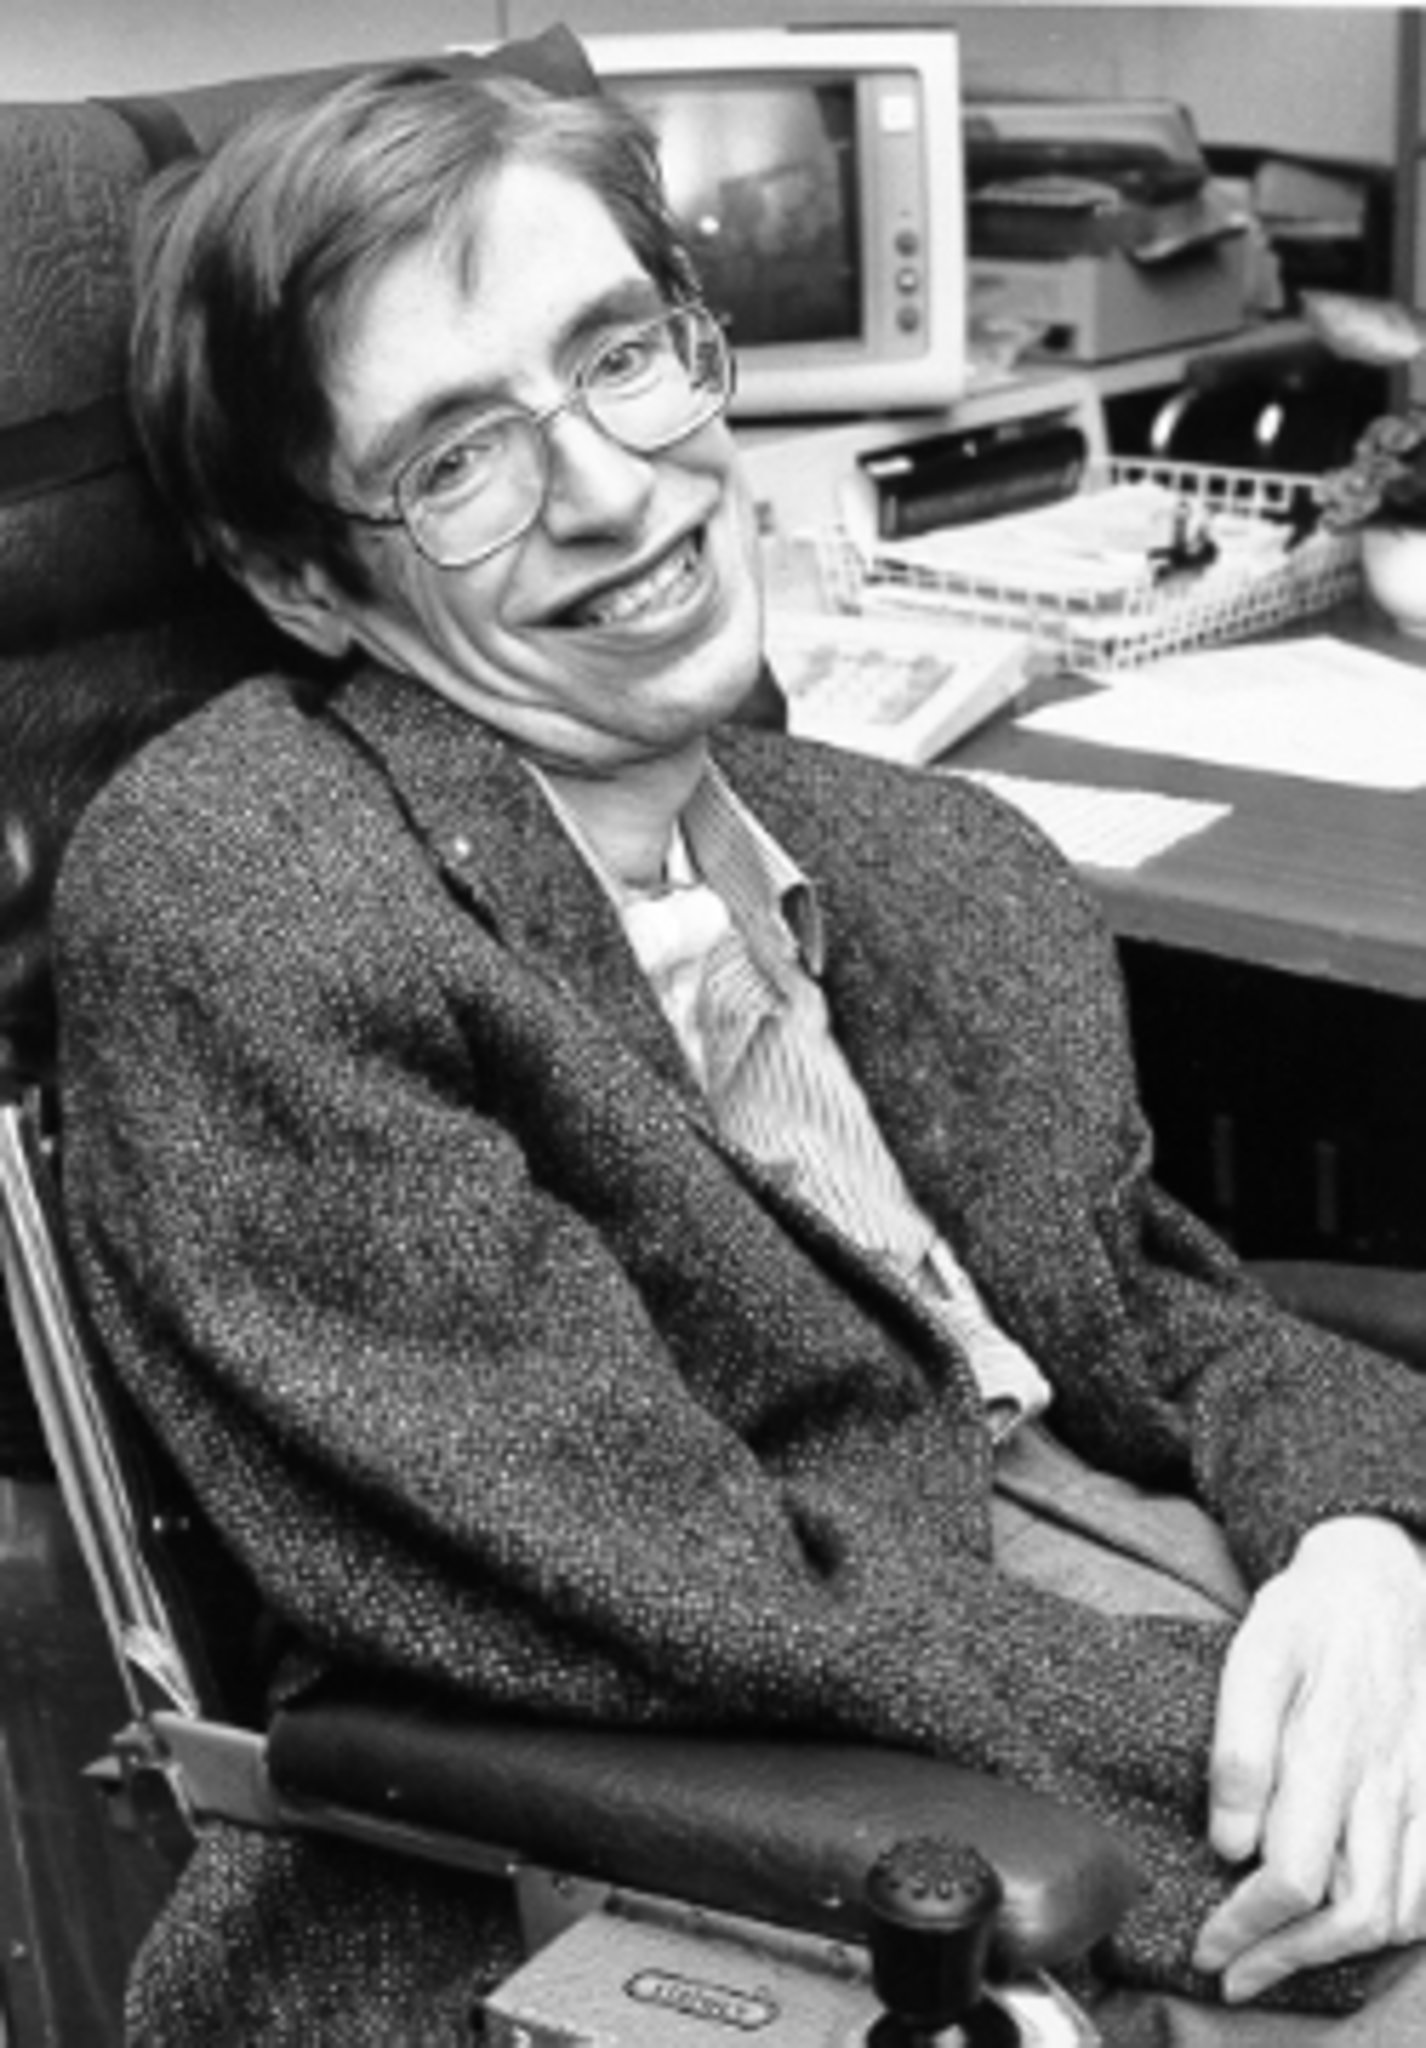 Stephen Hawking fue un físico teórico británico que se dedicó a la cosmología y a escribir sobre ella. Fue director de investigación en el Centro de Cosmología Teórica de la Universidad de Cambridge. Es mayormente conocido por descubrir que los agujeros negros emiten radiación.